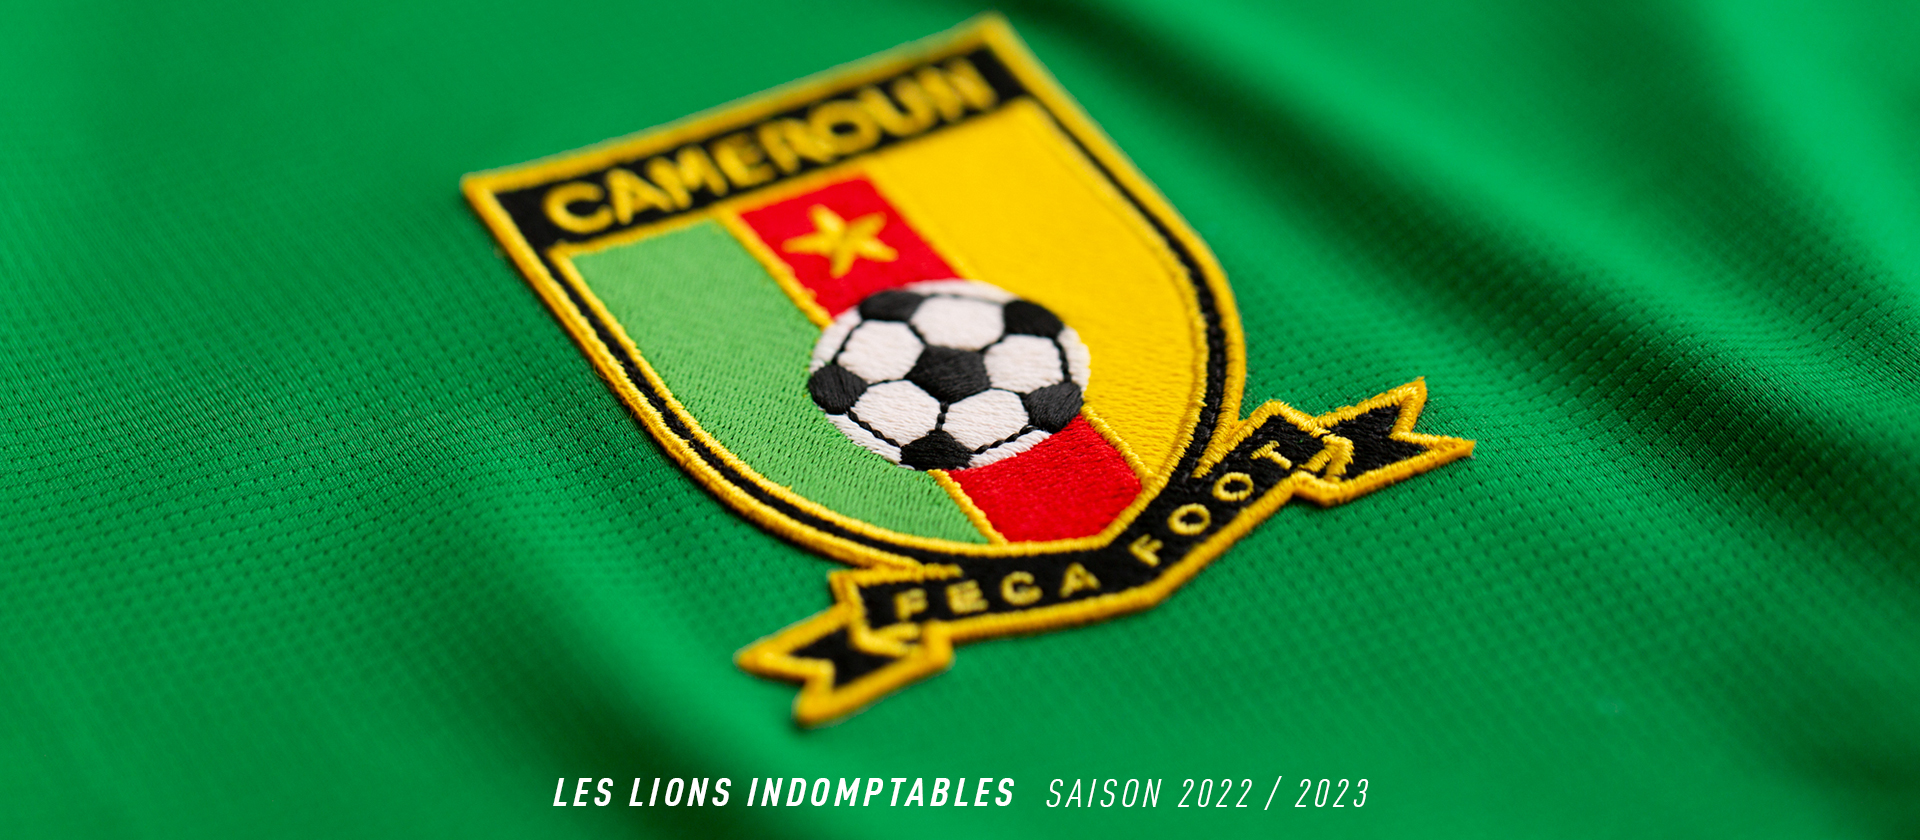 44,90 € - Maillot Cameroun football CR-4 pour supporter